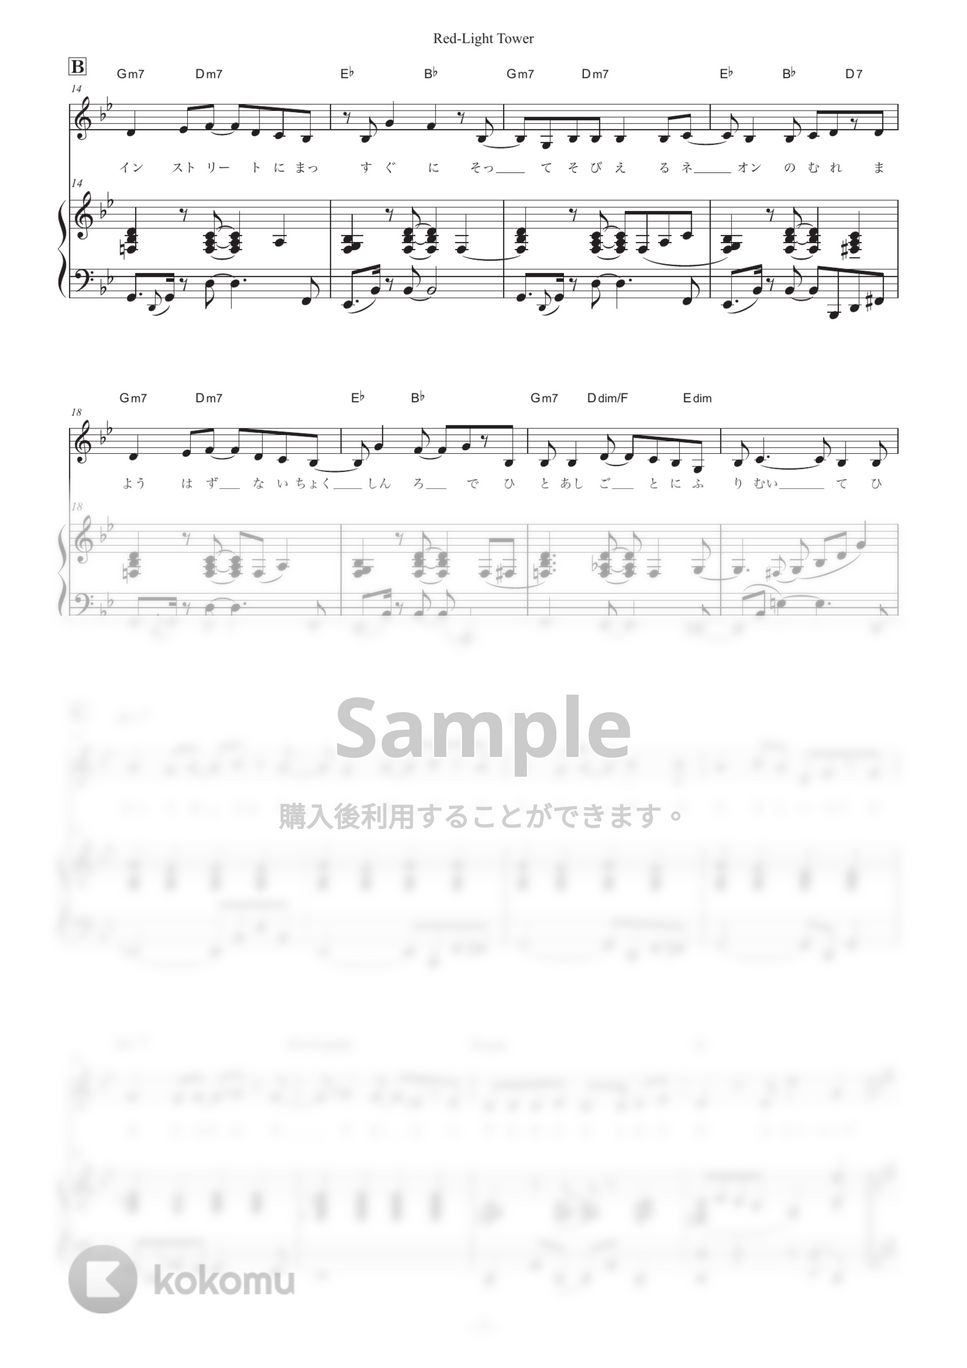 日食なつこ - Red-light Tower (ピアノ弾き語り) by otyazuke